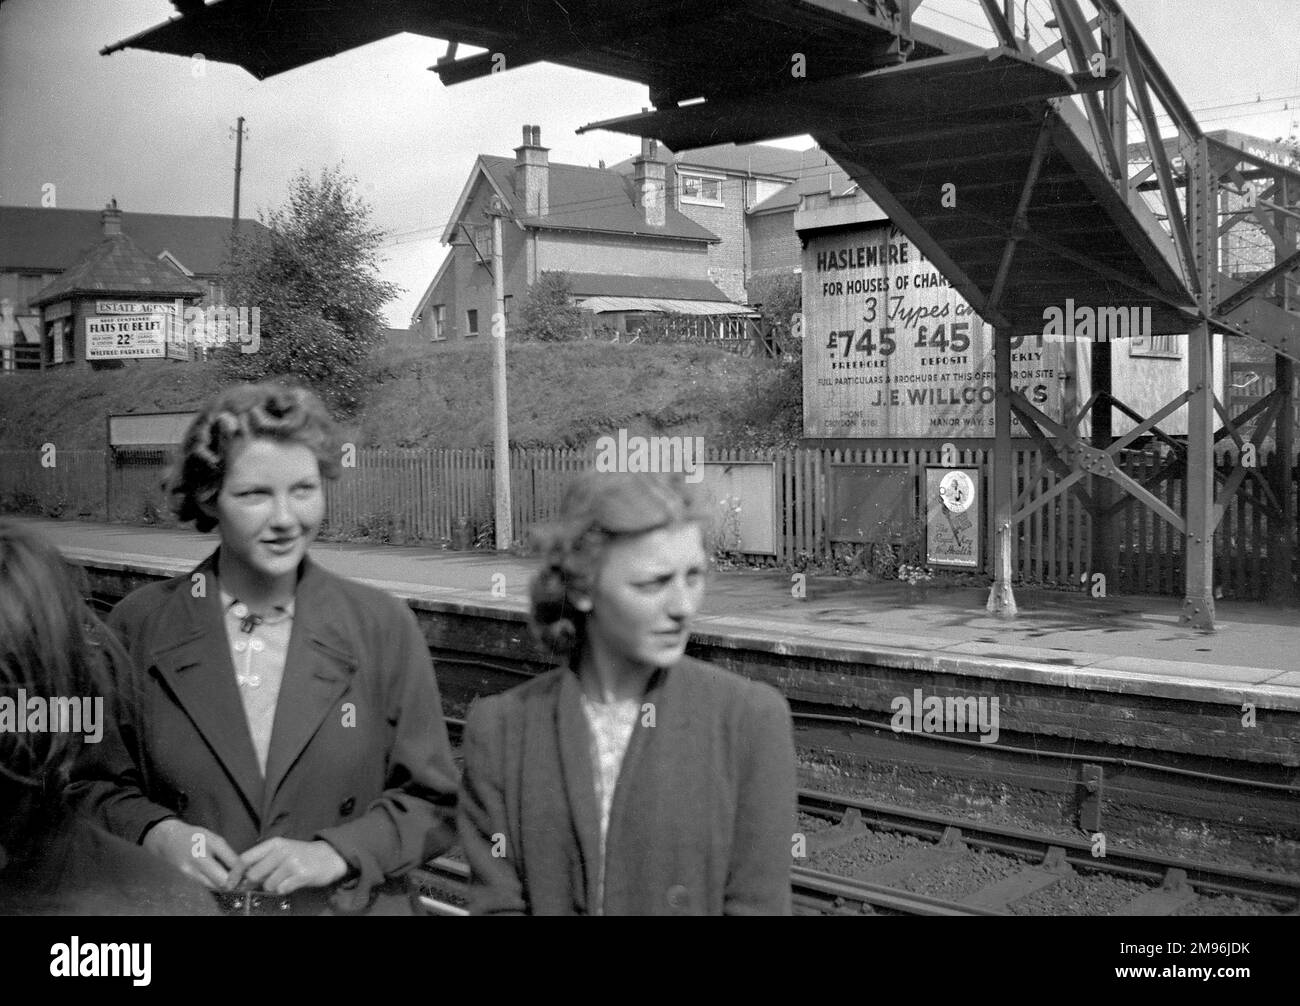 Due giovani donne in una stazione ferroviaria nel sud di Londra. Un annuncio sulla piattaforma opposta è per proprietà, case di carattere per £745 freehold. Un altro segno fa pubblicità agli appartamenti auto-contenuti per lasciare. Foto Stock